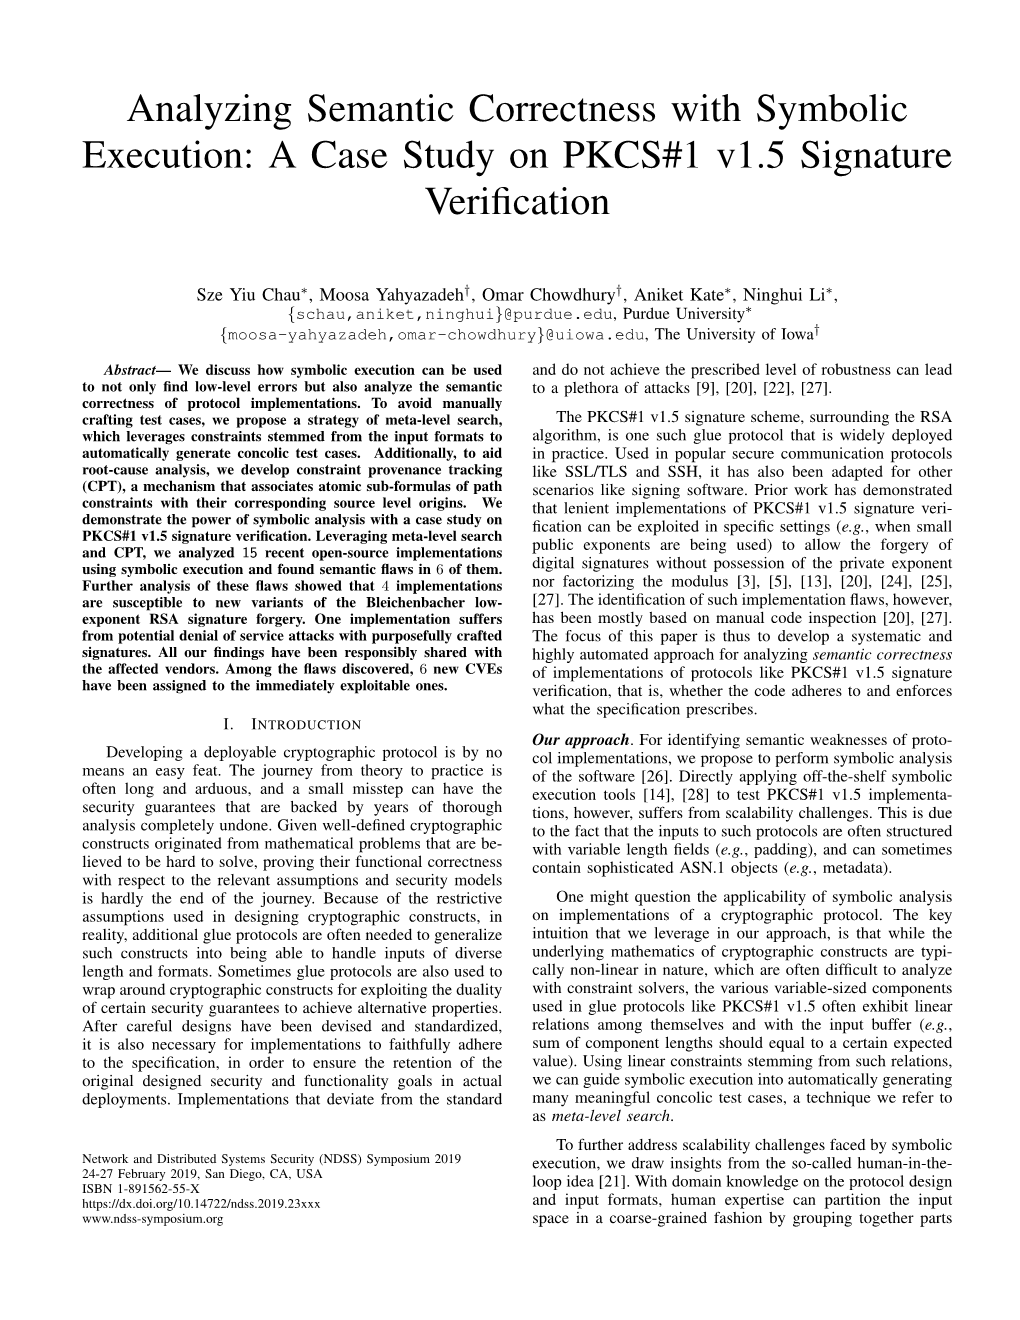 Analyzing Semantic Correctness with Symbolic Execution: a Case Study on PKCS#1 V1.5 Signature Verification